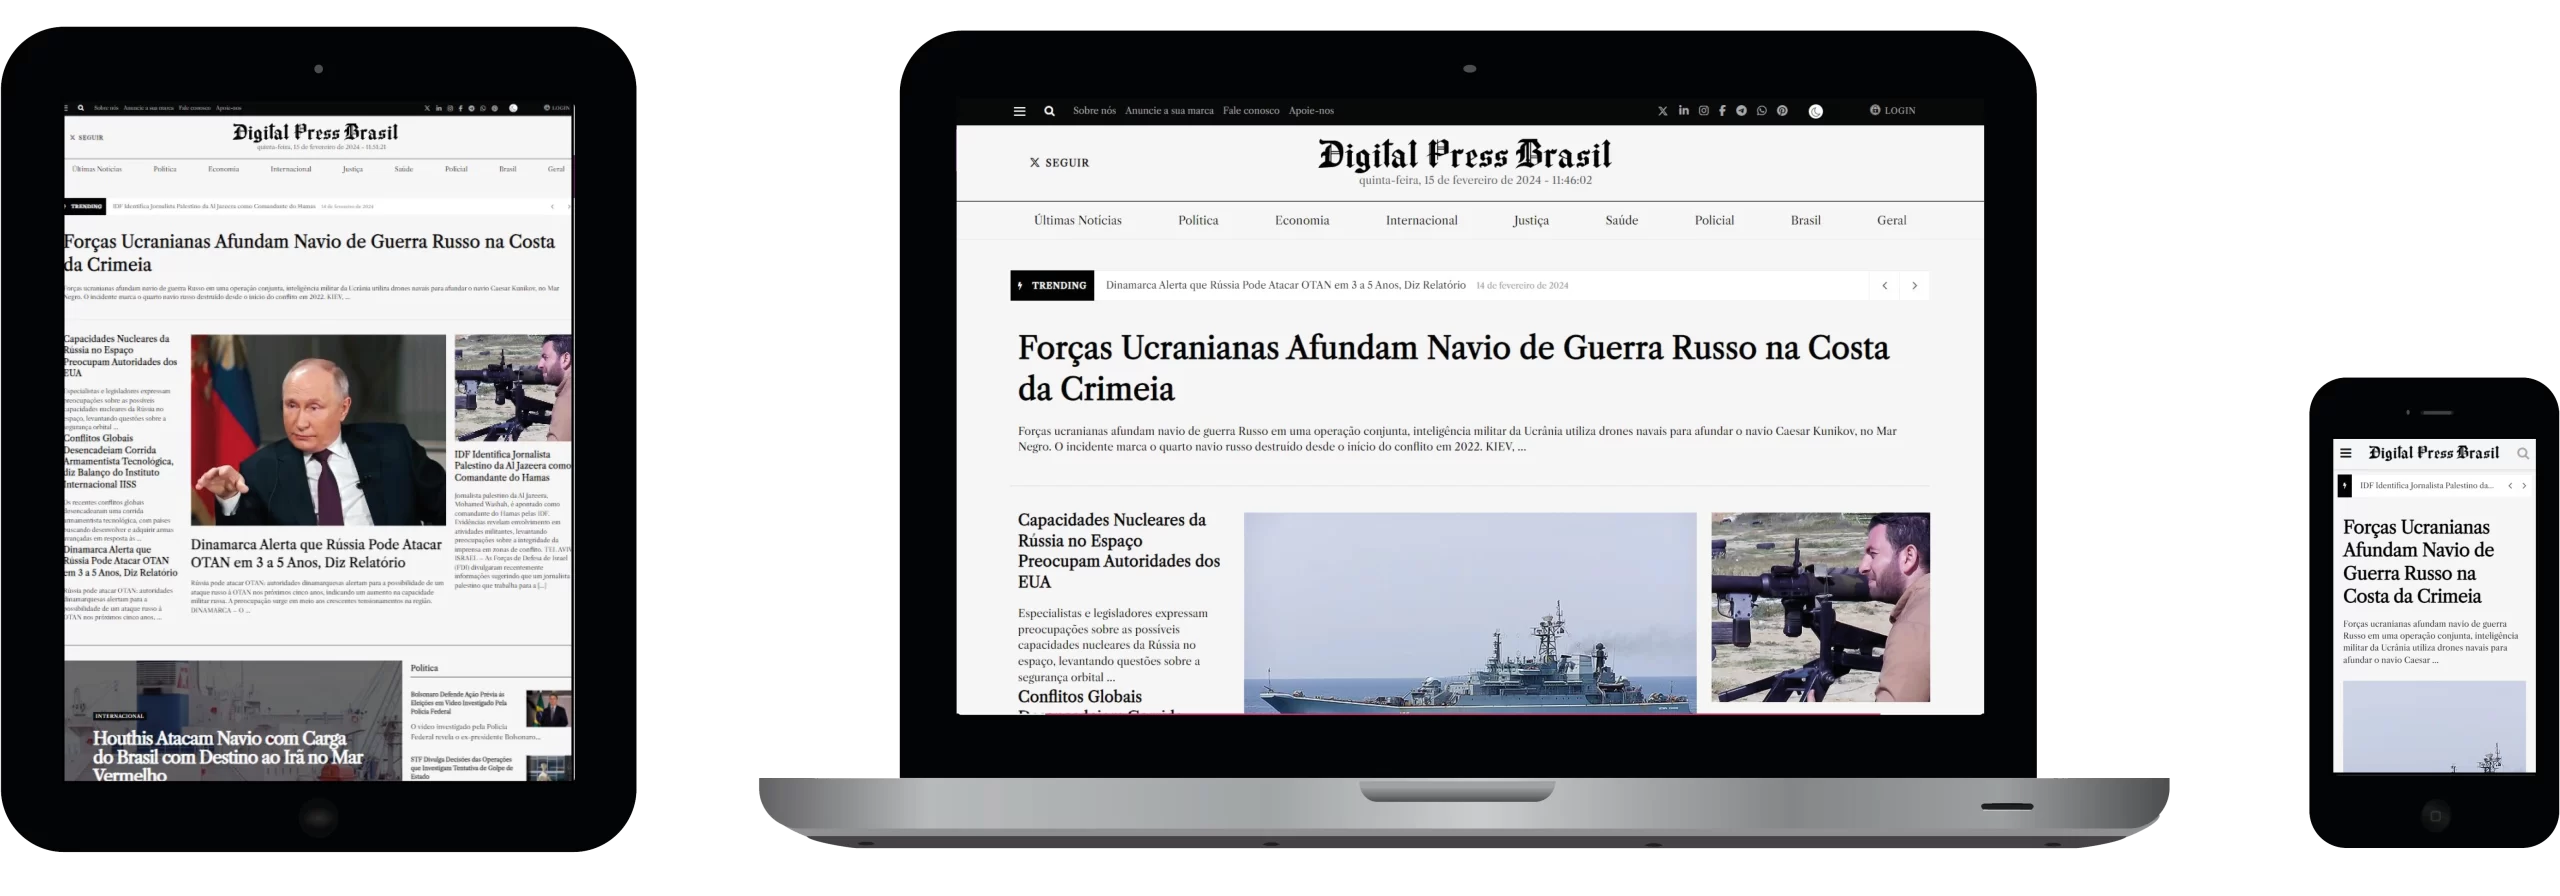 jornal, Digital Press Brasil, jornal gratuito, Brasil, portal de notícias